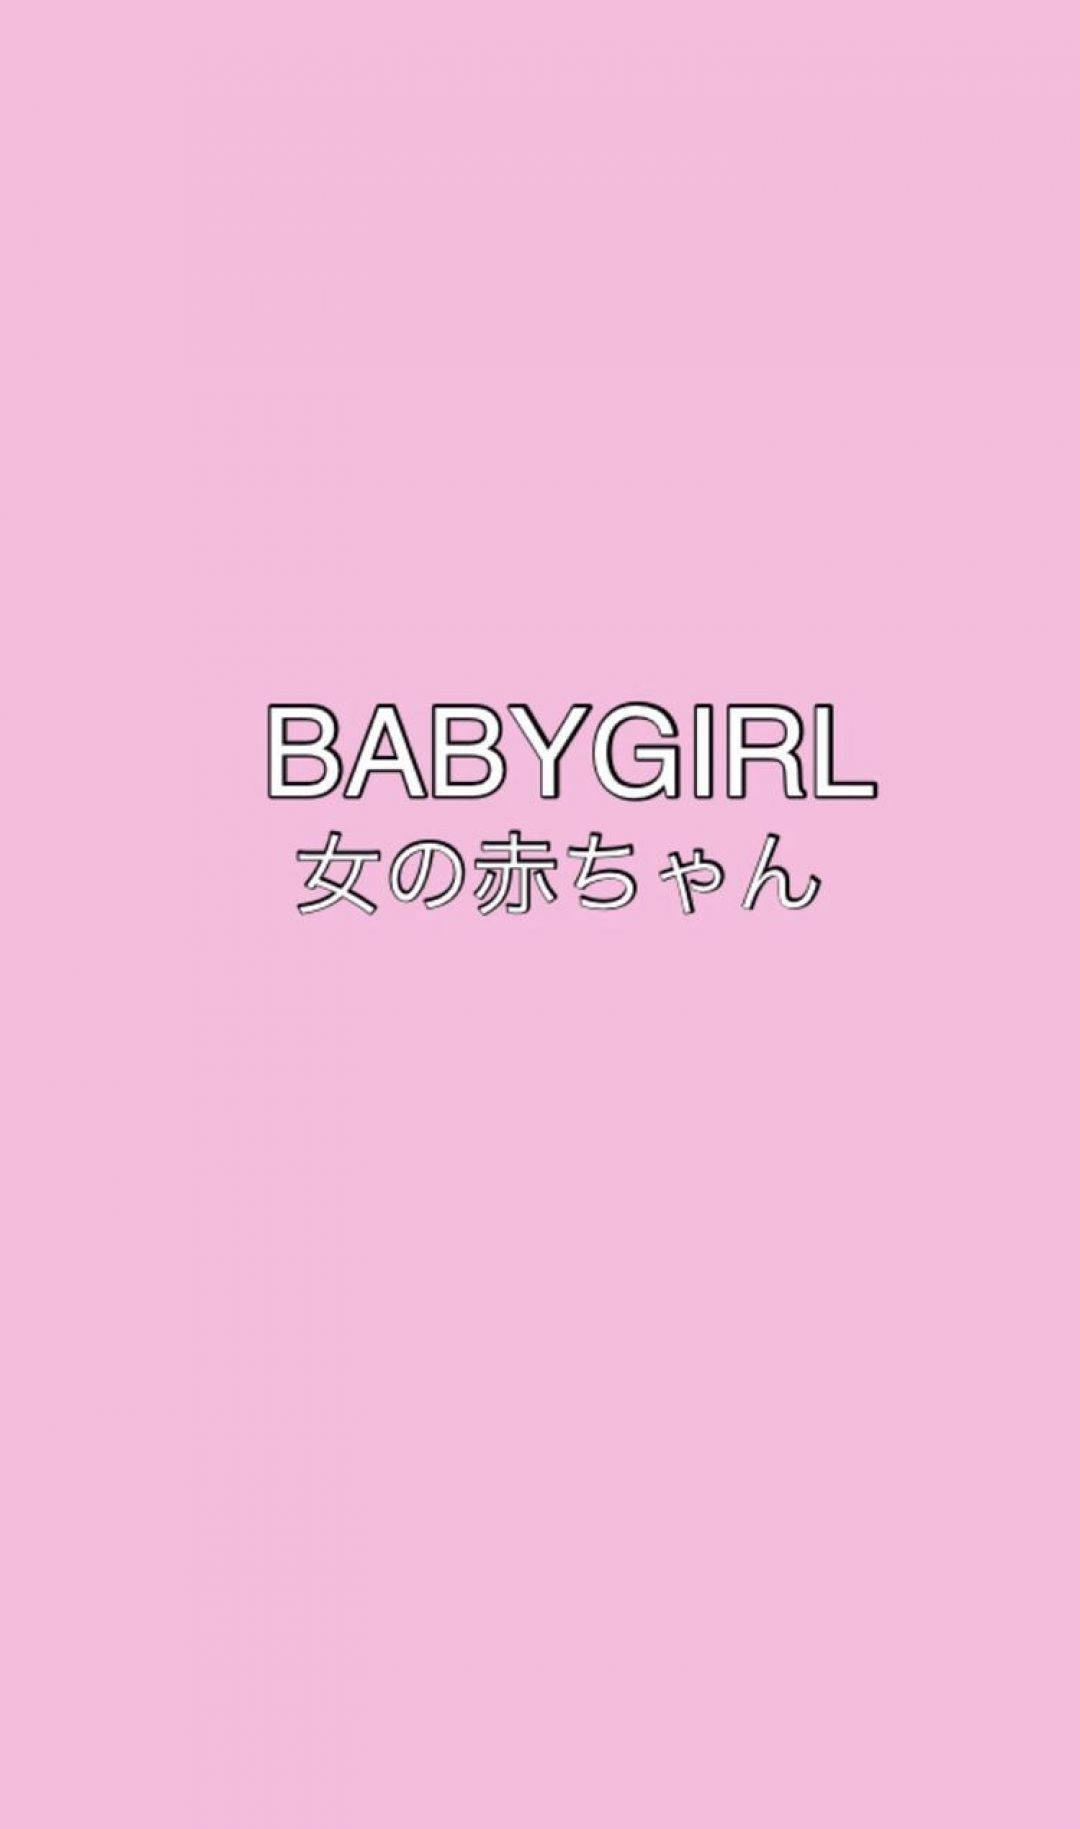 Japanese Baby Girl E-girl Aesthetic Wallpaper